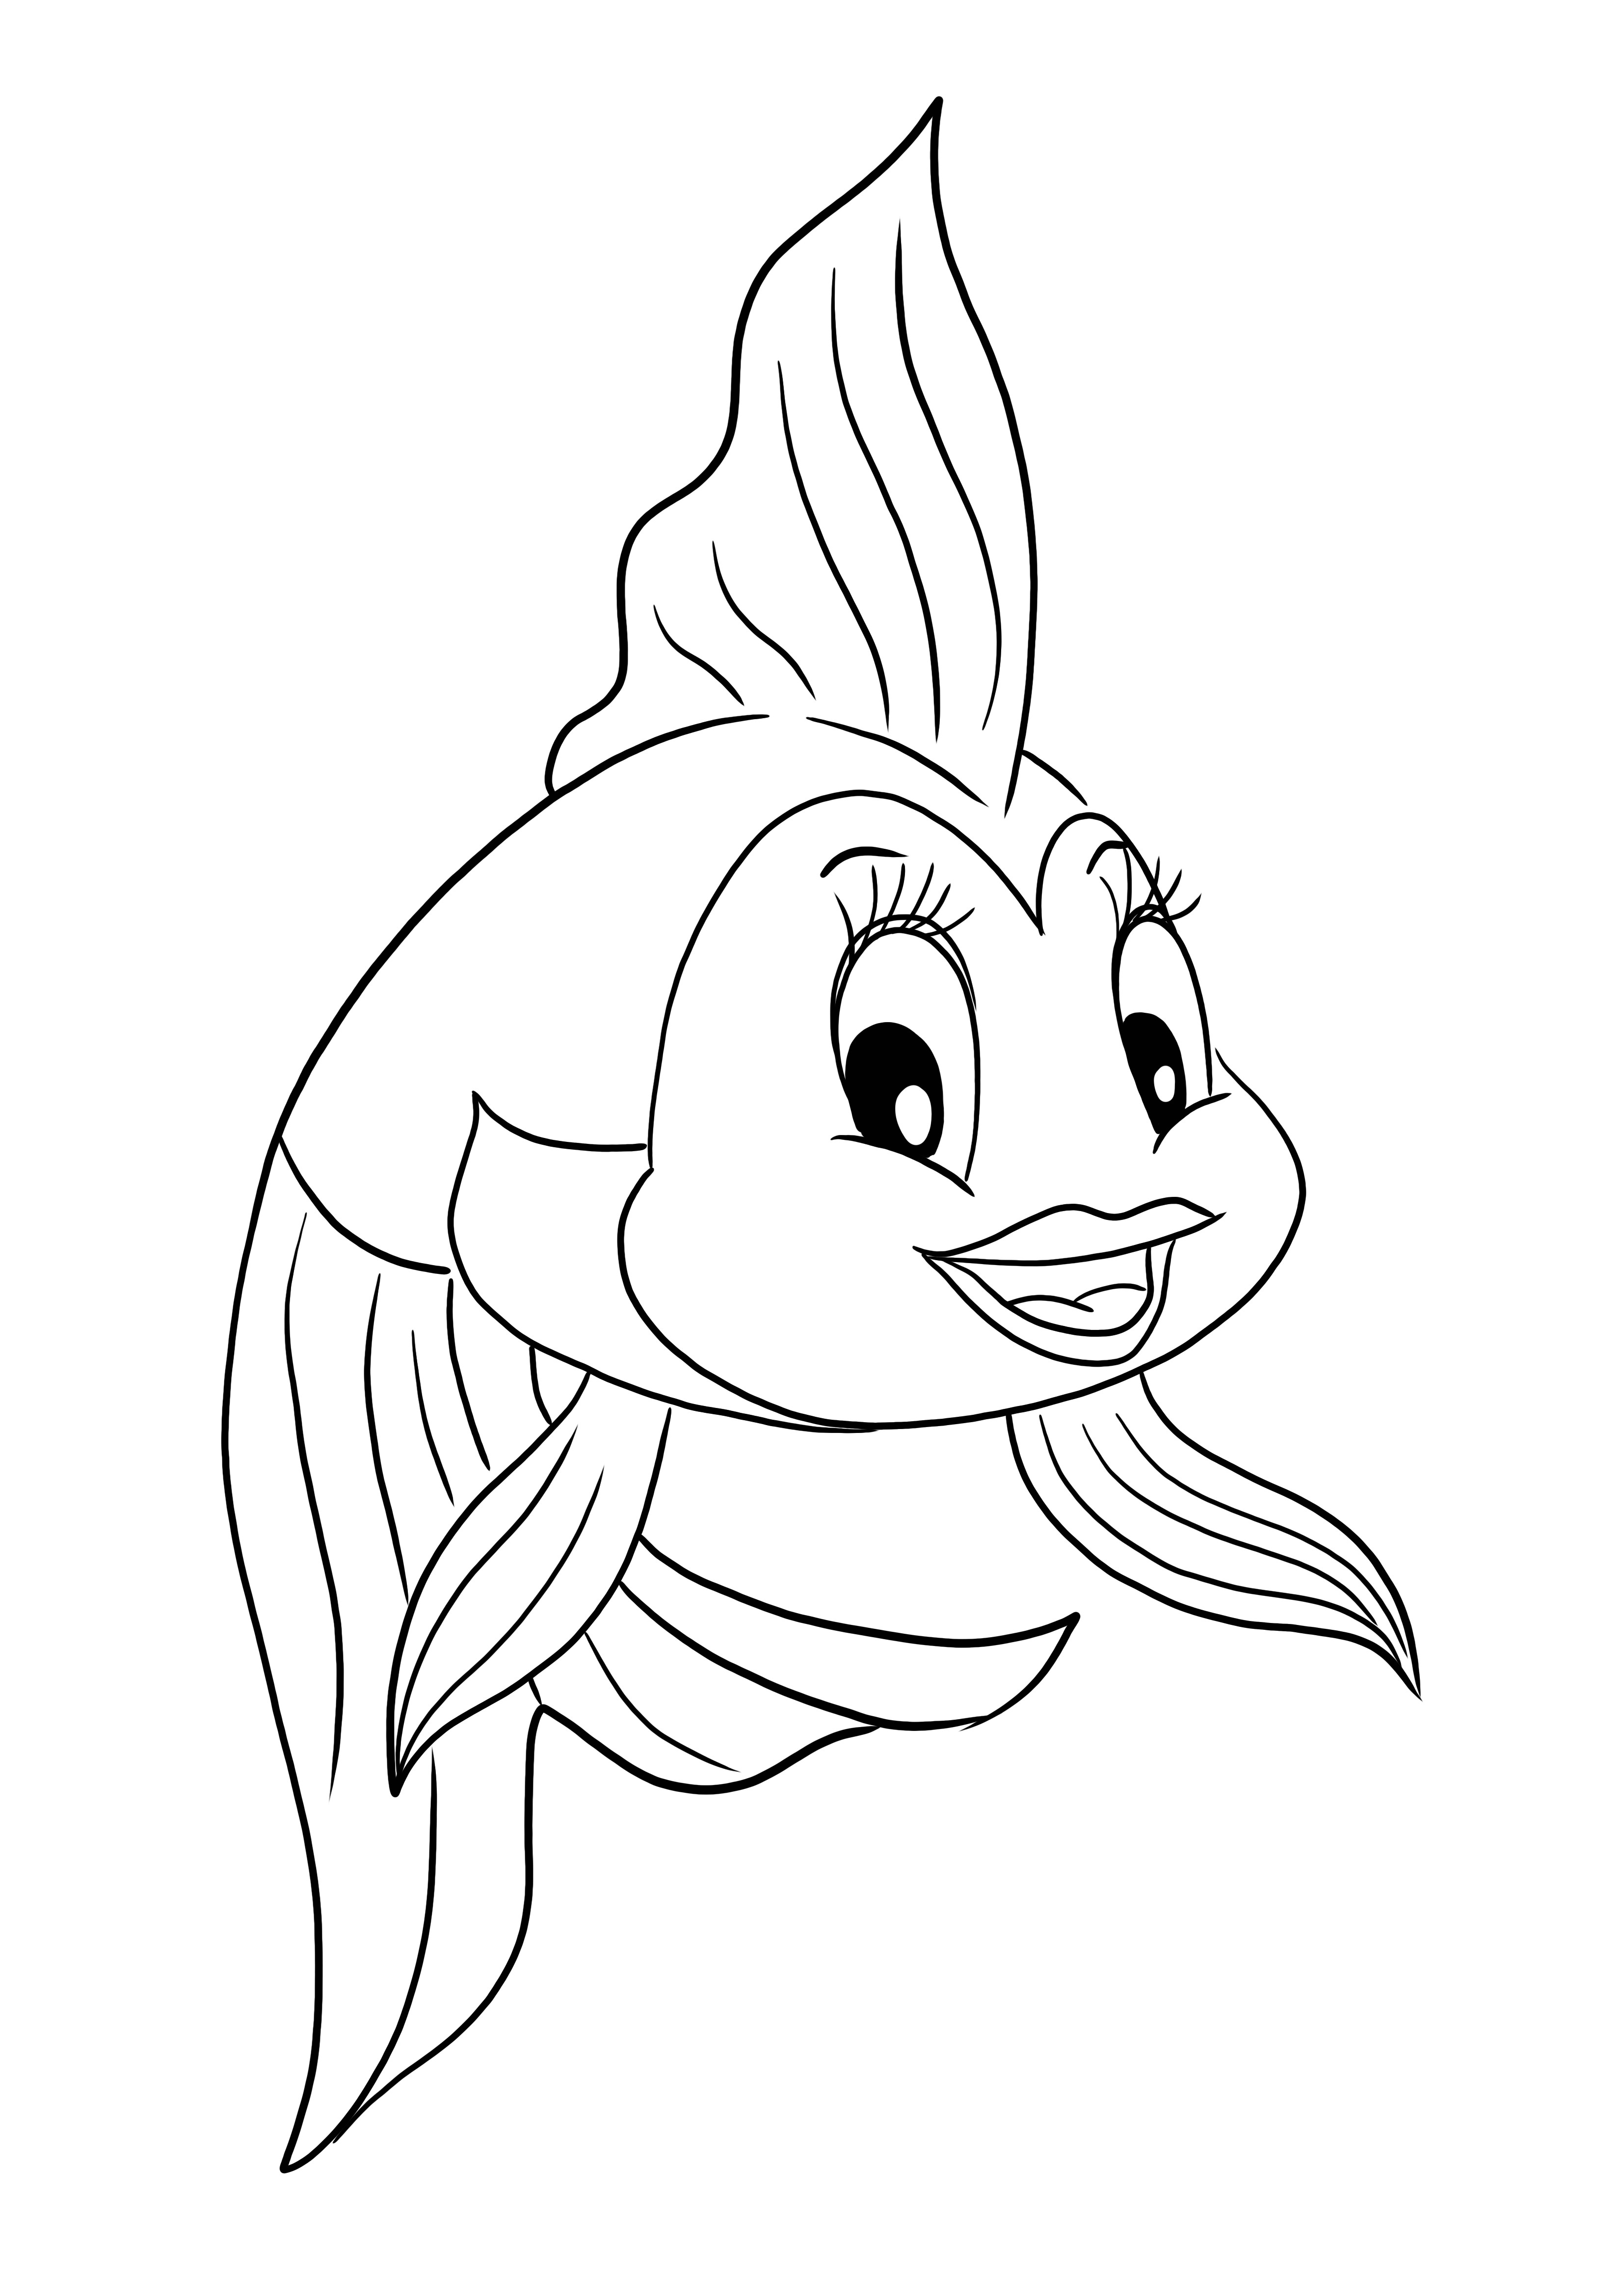 O pagină gratuită de colorat și imprimat cu peștele Cleo din desenul animat Pinocchio pentru copii